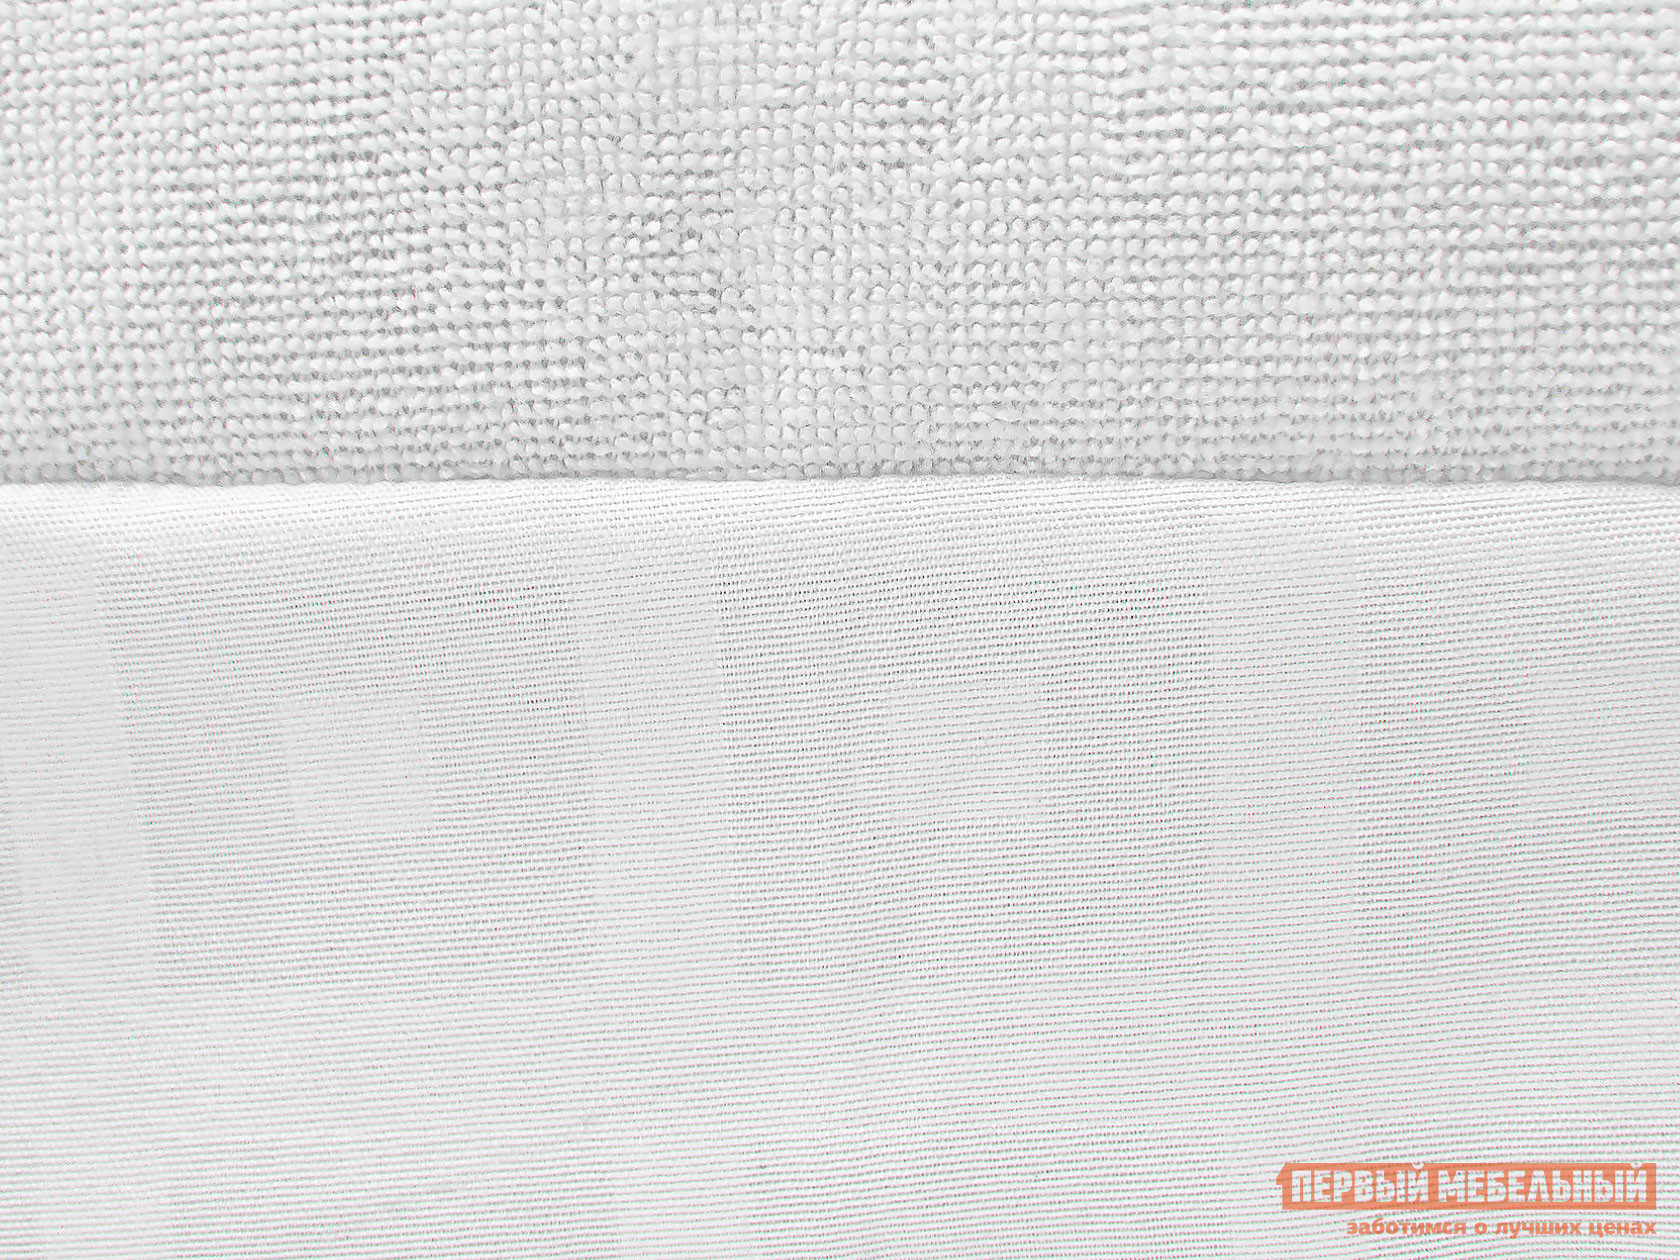 Чехол для матраса  Фулл протекшн с бортом 2 Белый махровый, 900 Х 2000 мм от Первый Мебельный